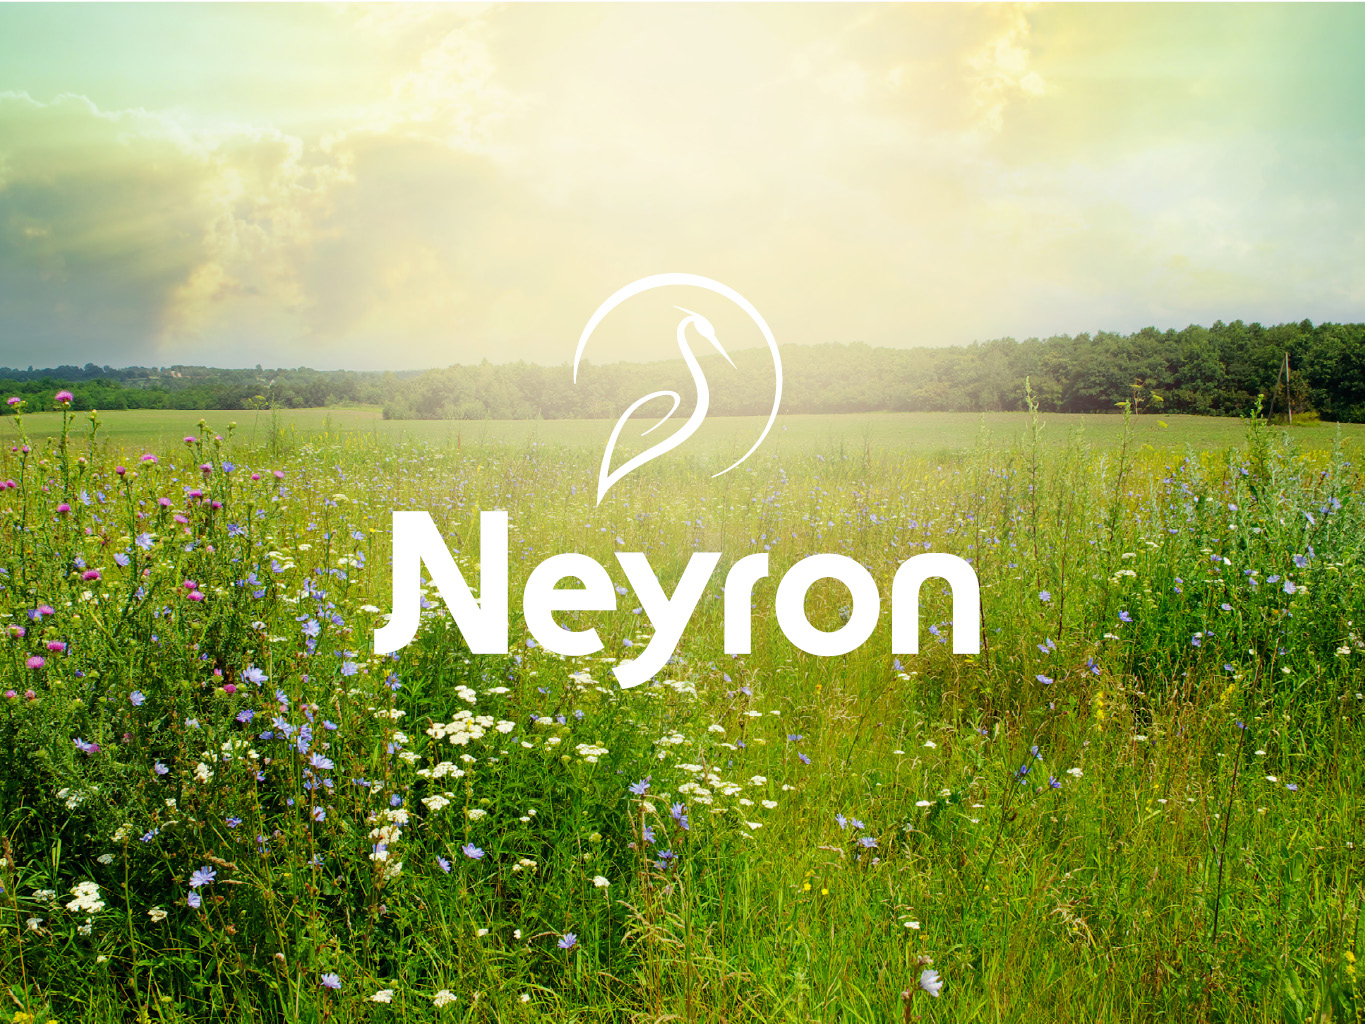 Réalisation du logotype de la commune de Neyron située dans l'Ain